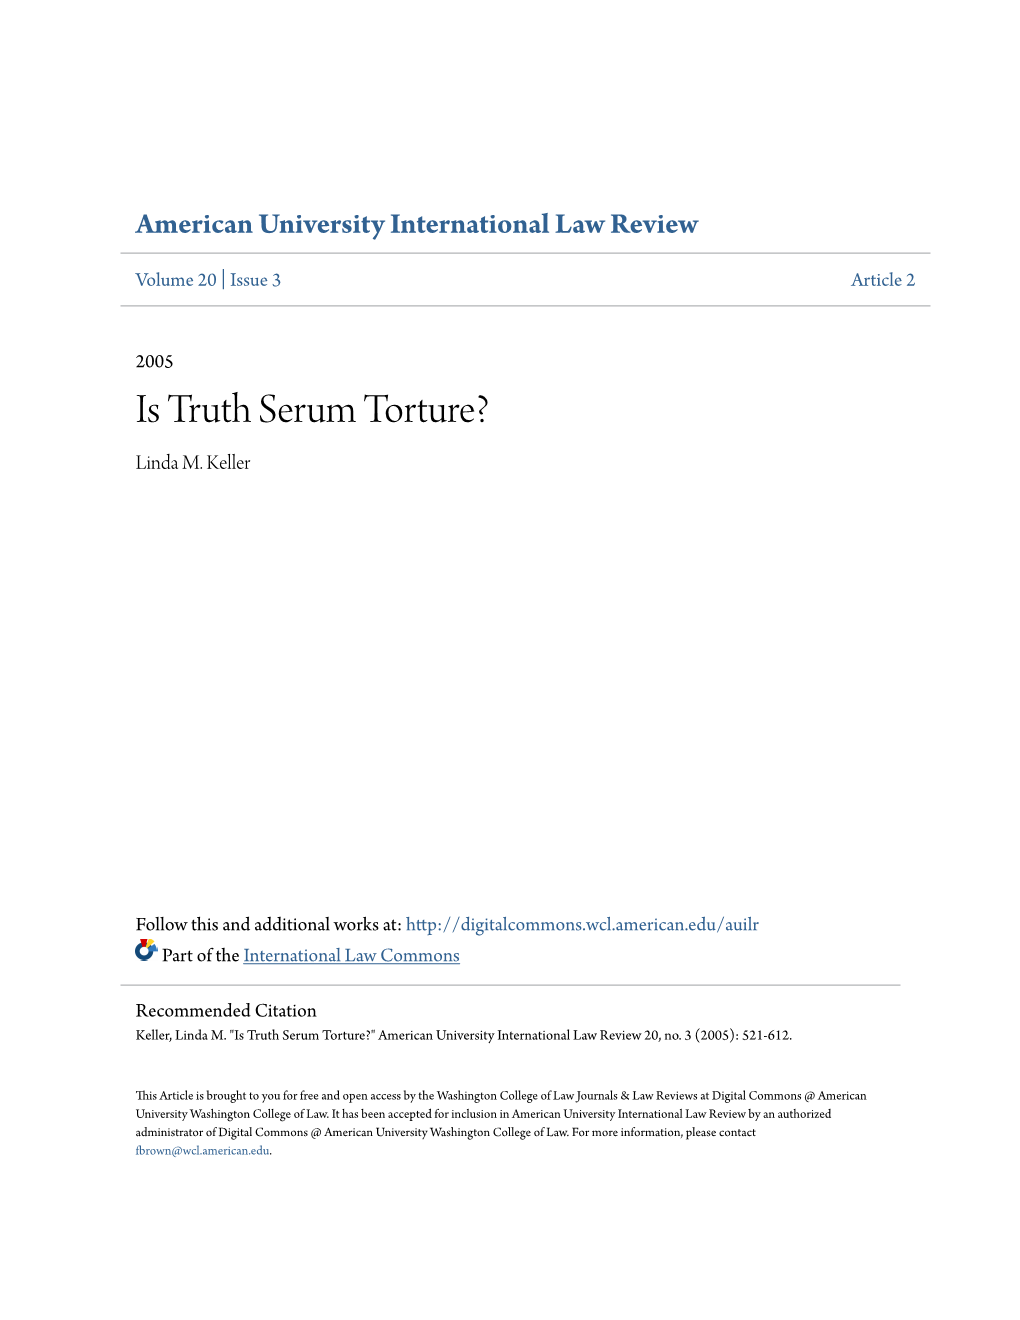 Is Truth Serum Torture? Linda M